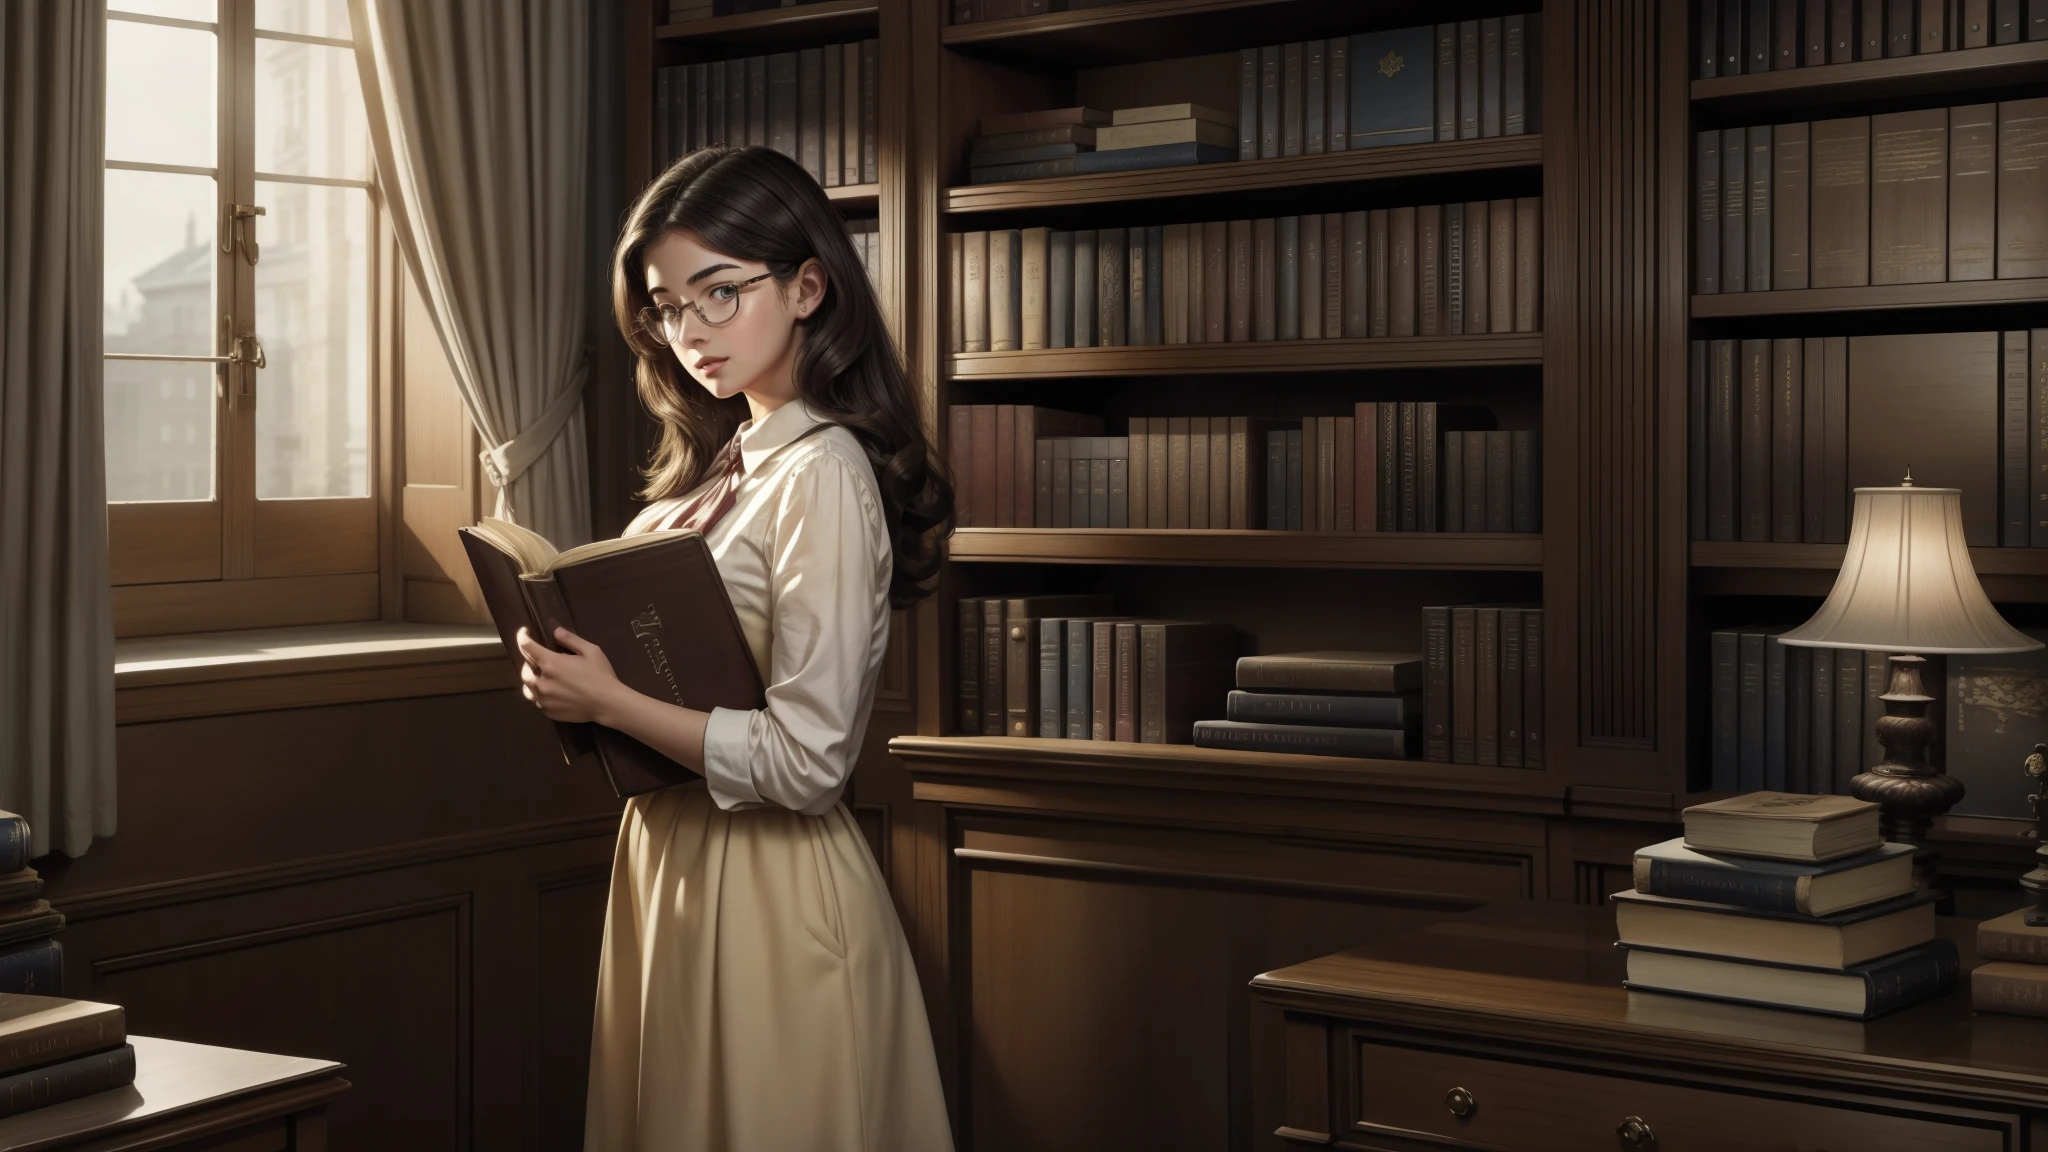 一位 25 歲左右的歐洲女大學生的寫實插畫概念藝術, 戴著大眼鏡, 漂亮的臉蛋, 細緻的棕色眼睛, 她手裡拿著很多書, 她手裡拿著很多書, 她隨身帶著一大堆書, 圖書館的溫暖背景, 有大窗户, 現實例證, 20 世纪 50 年代时尚, 史蒂芬福德的妻子, 傑作.